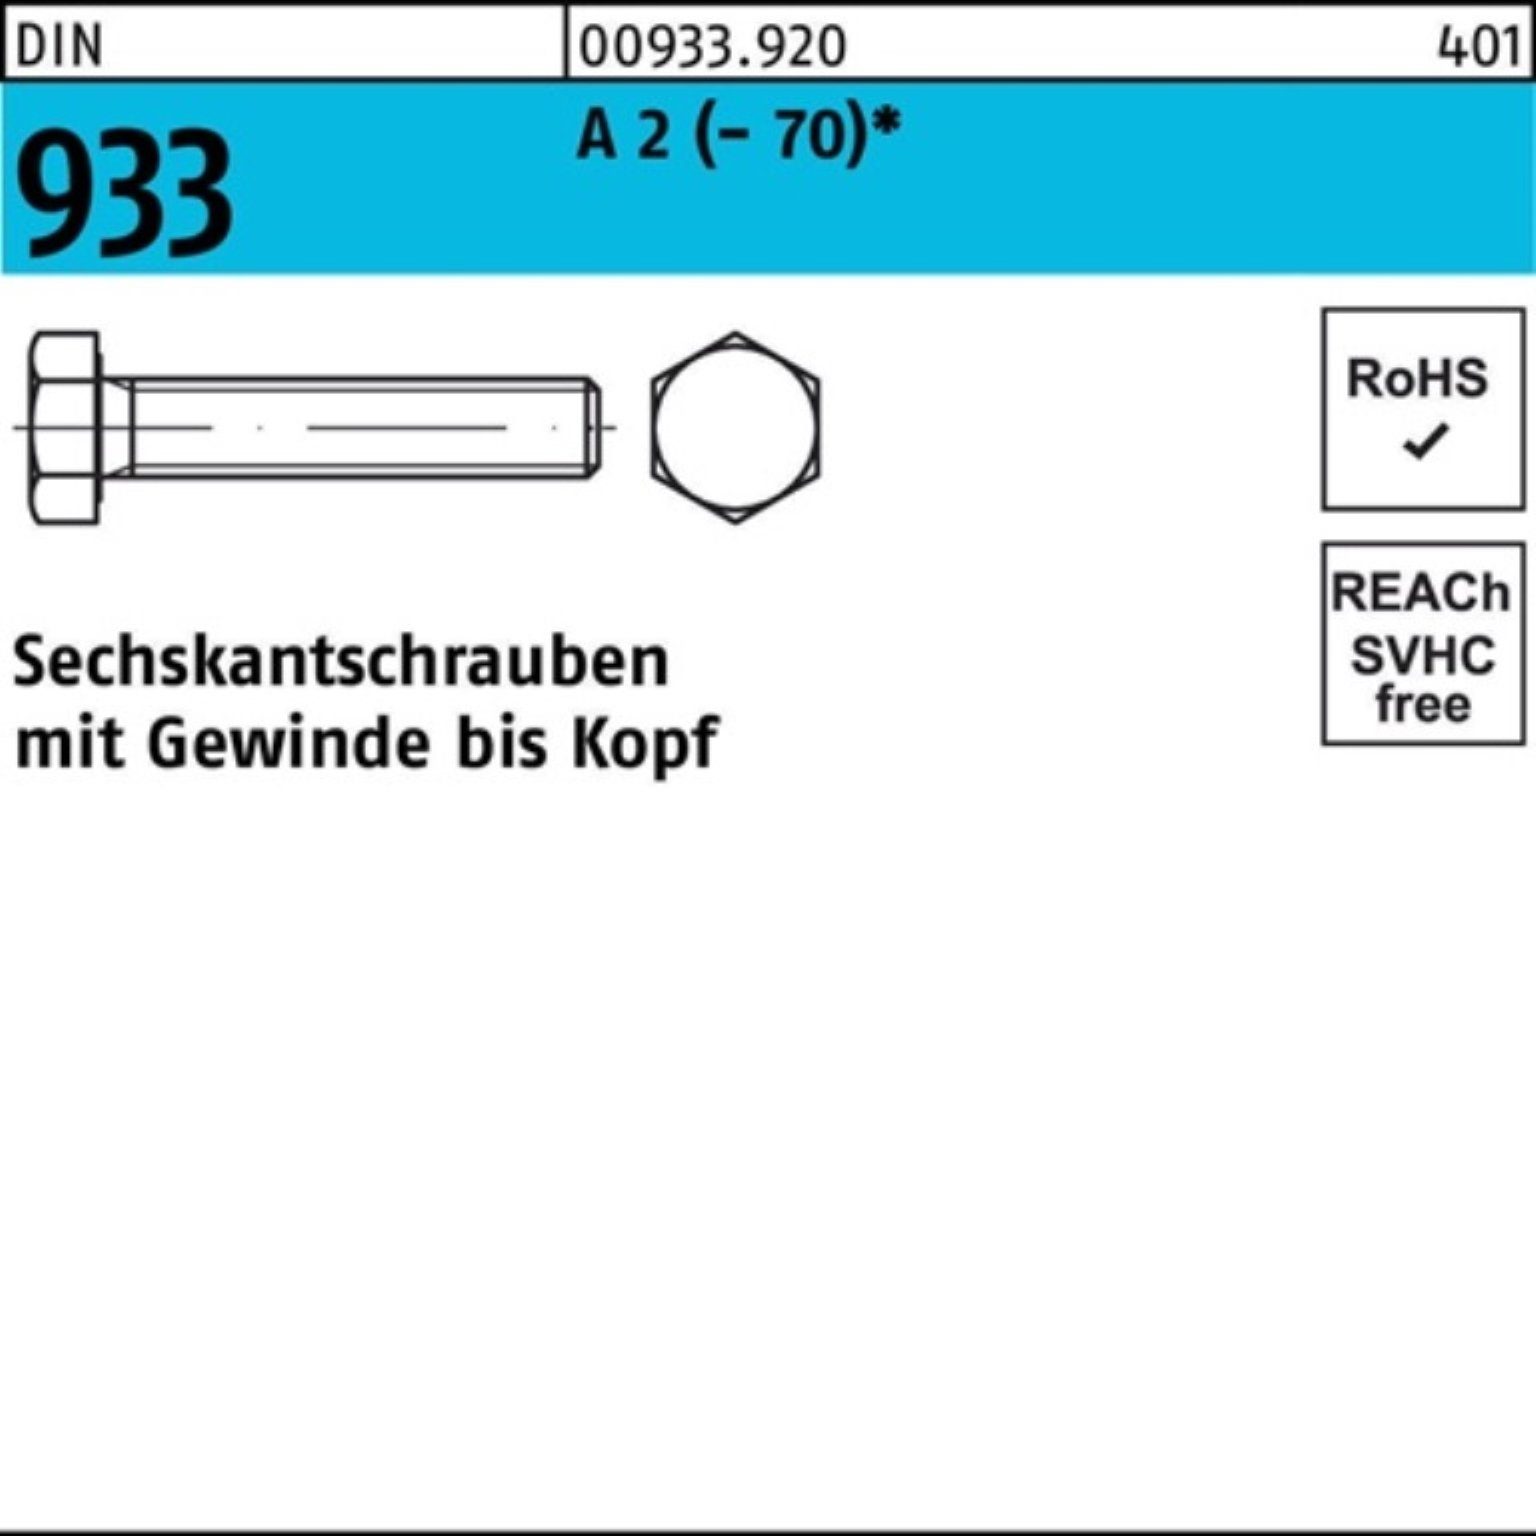 A Stück VG Reyher 100er Sechskantschraube 933 Sechskantschraube 2 DIN 50 (70) 45 Pack M14x D